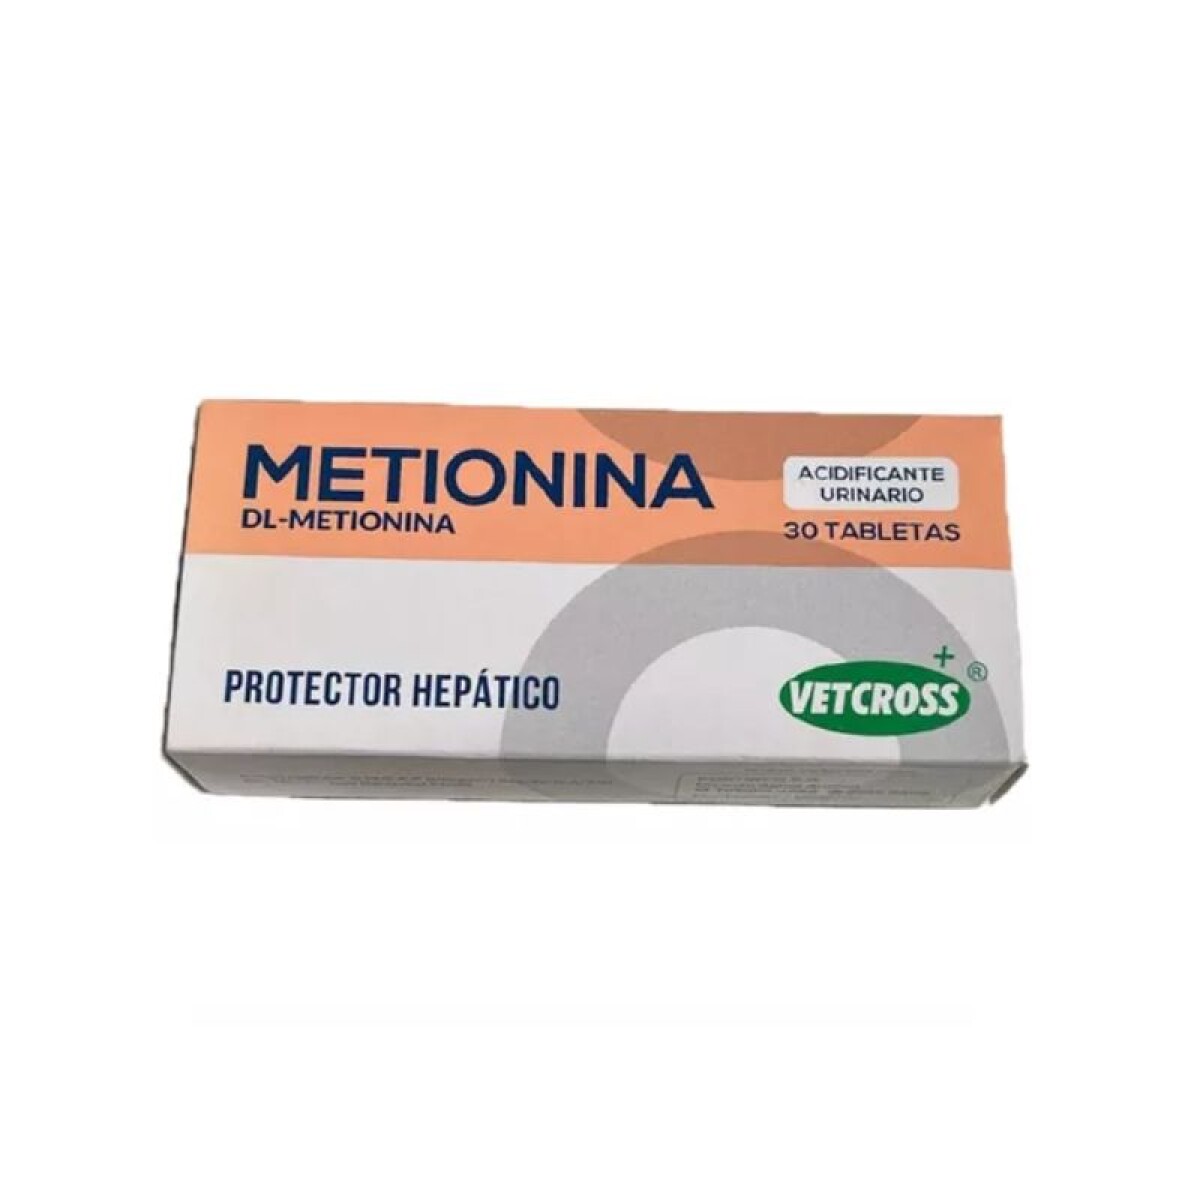 METIONINA (CAJA) - Metionina (caja) 